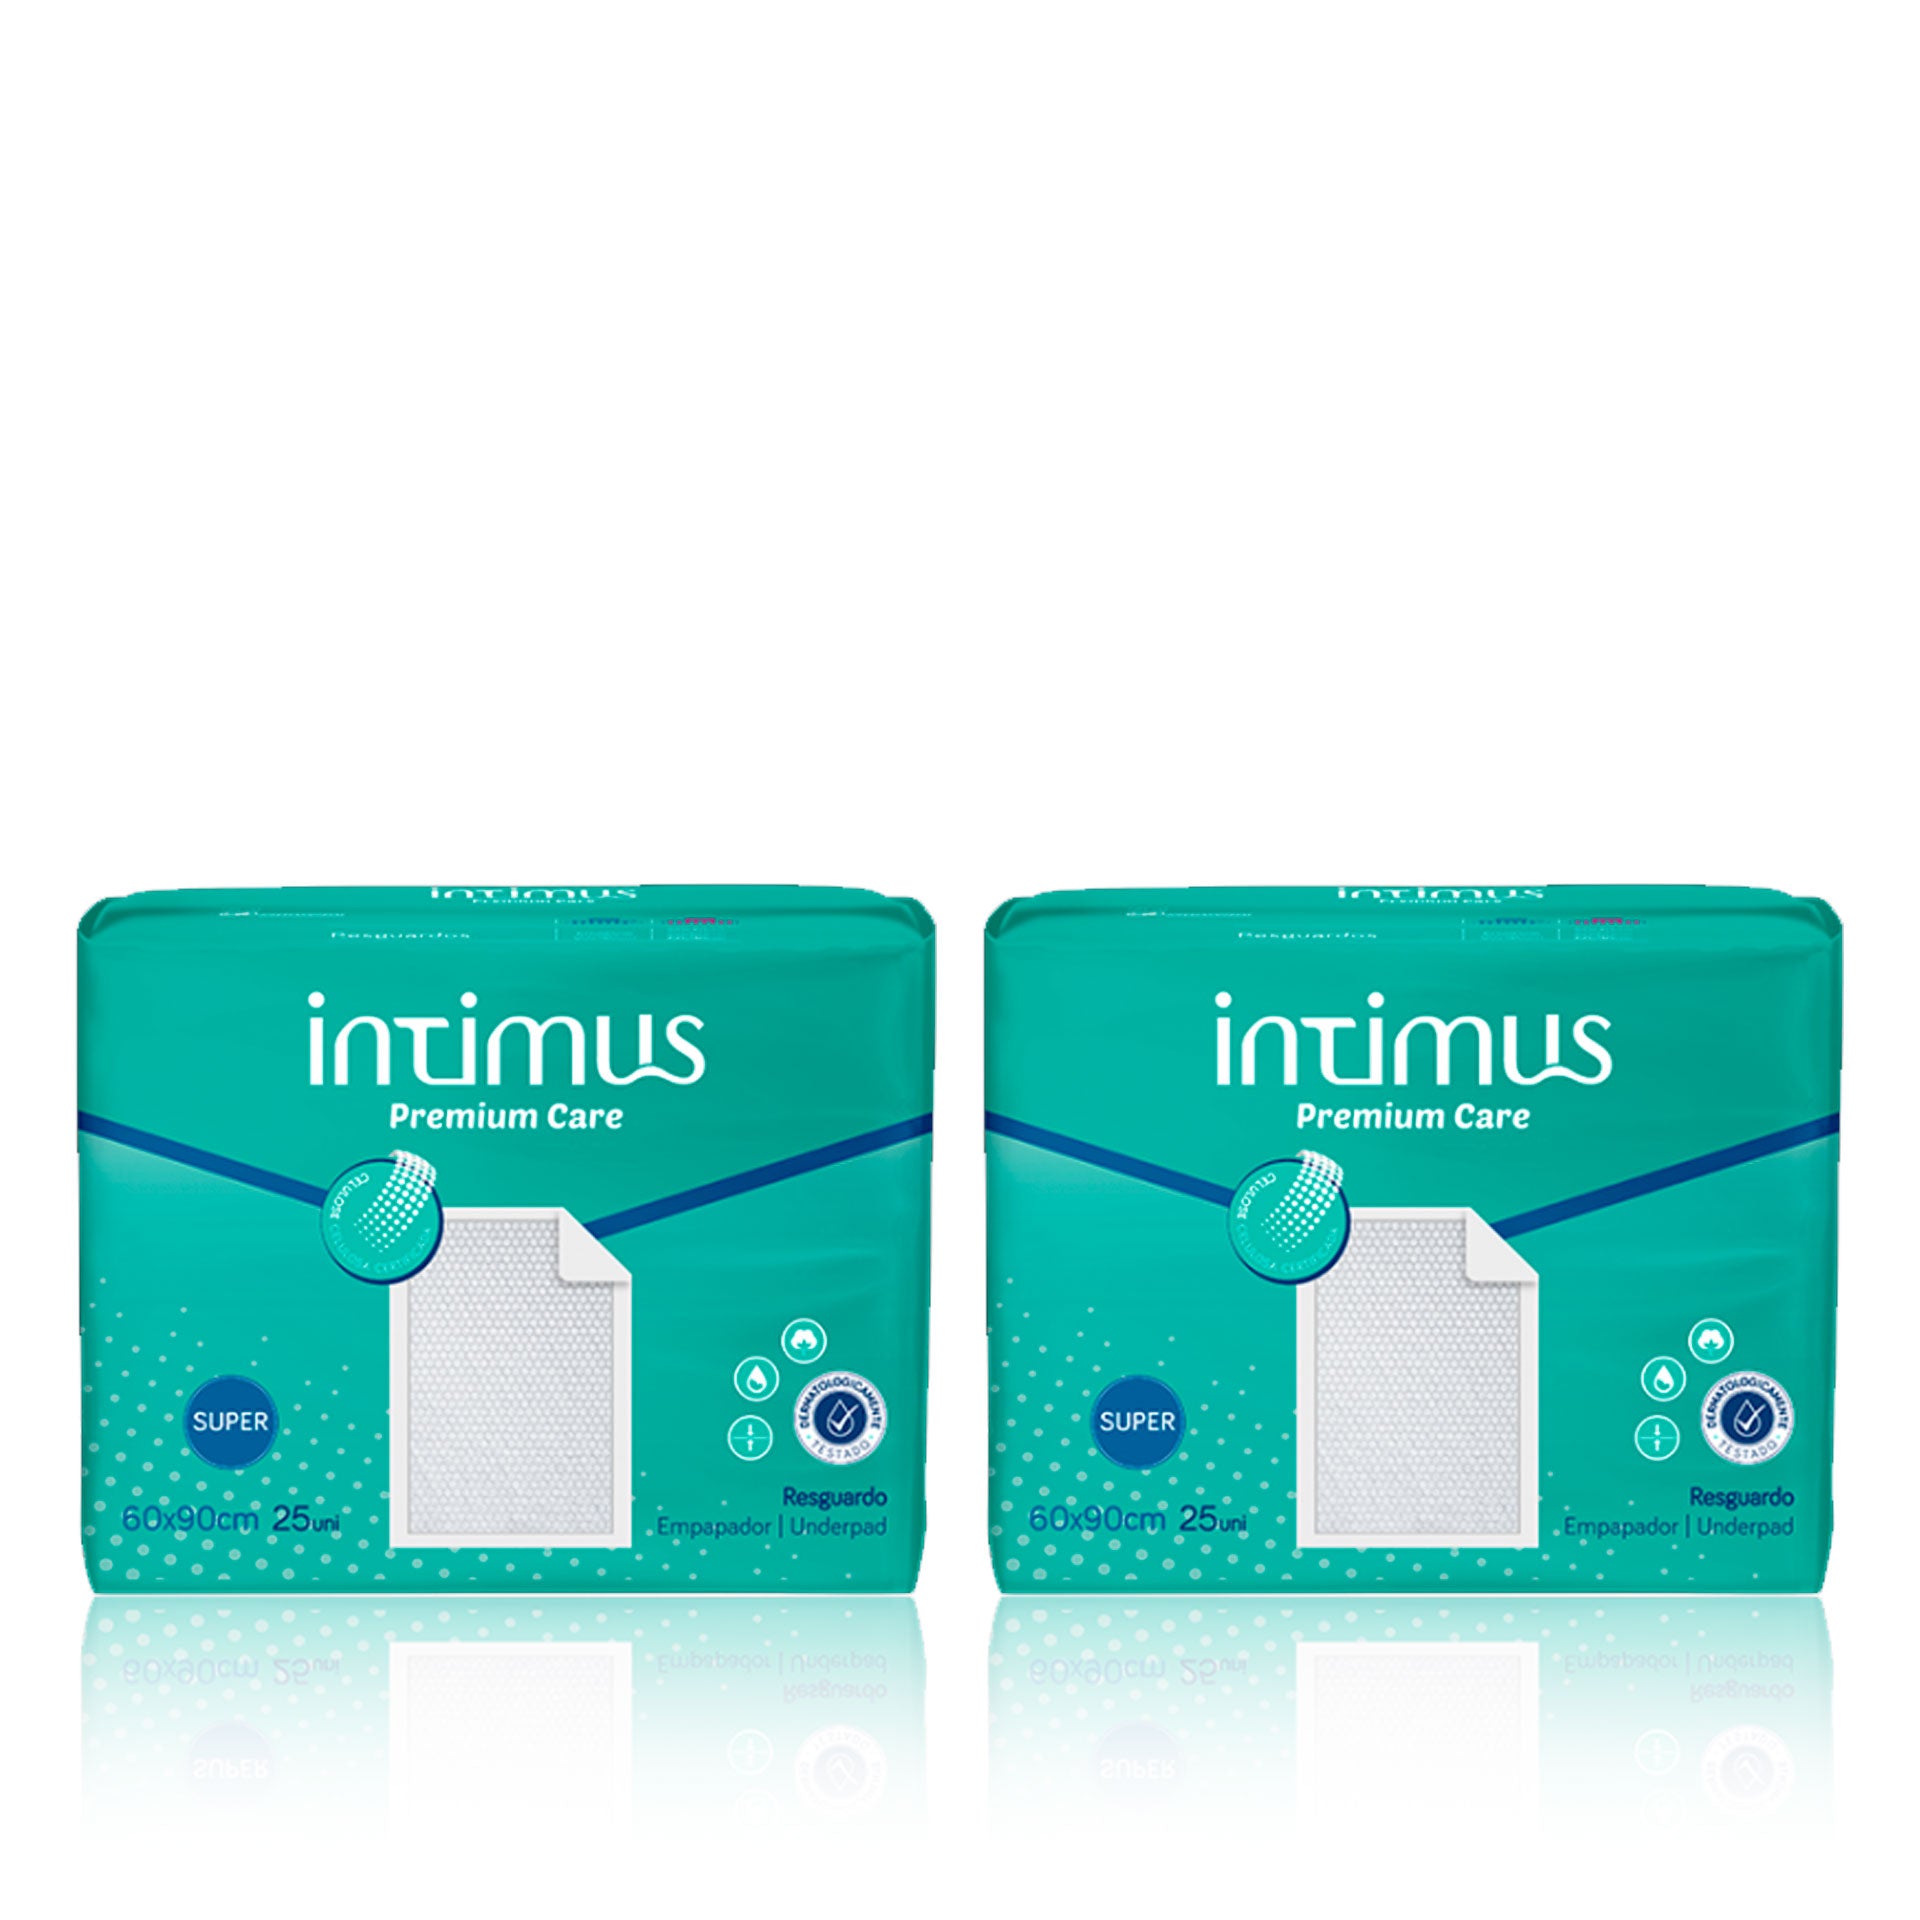 Intimus Resguardos Protectores Premium Care Maxi 60 x 90 cm 25 un - Pack 2 x 25 un